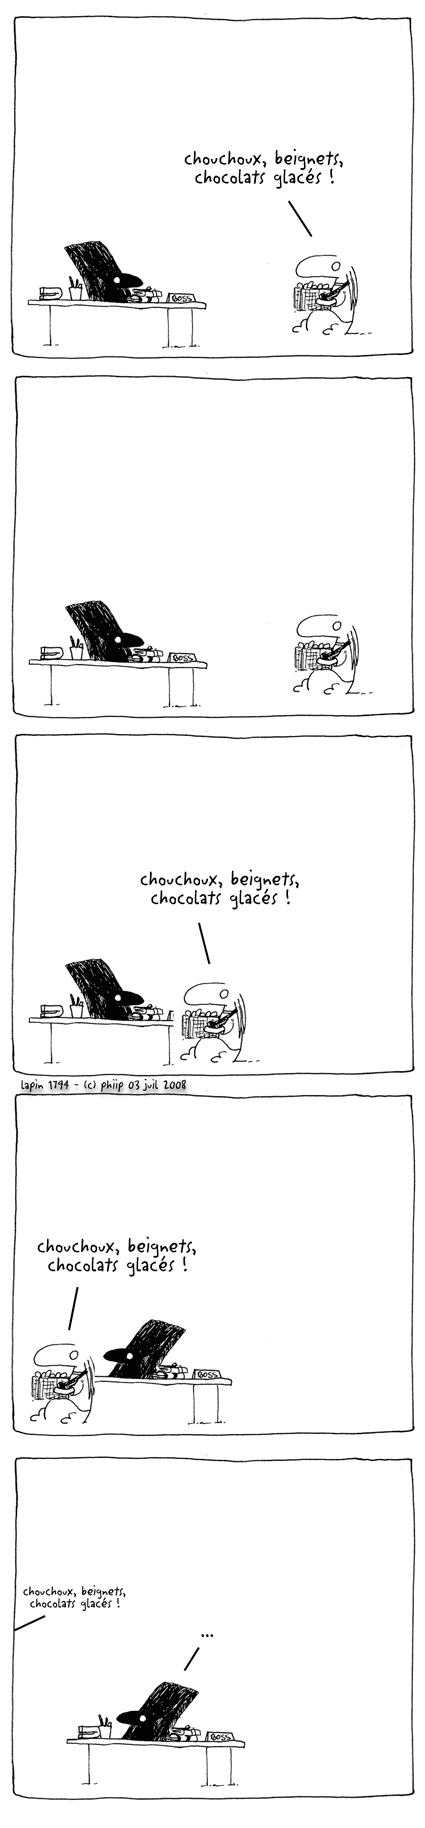 chouchoux beignets chocolats